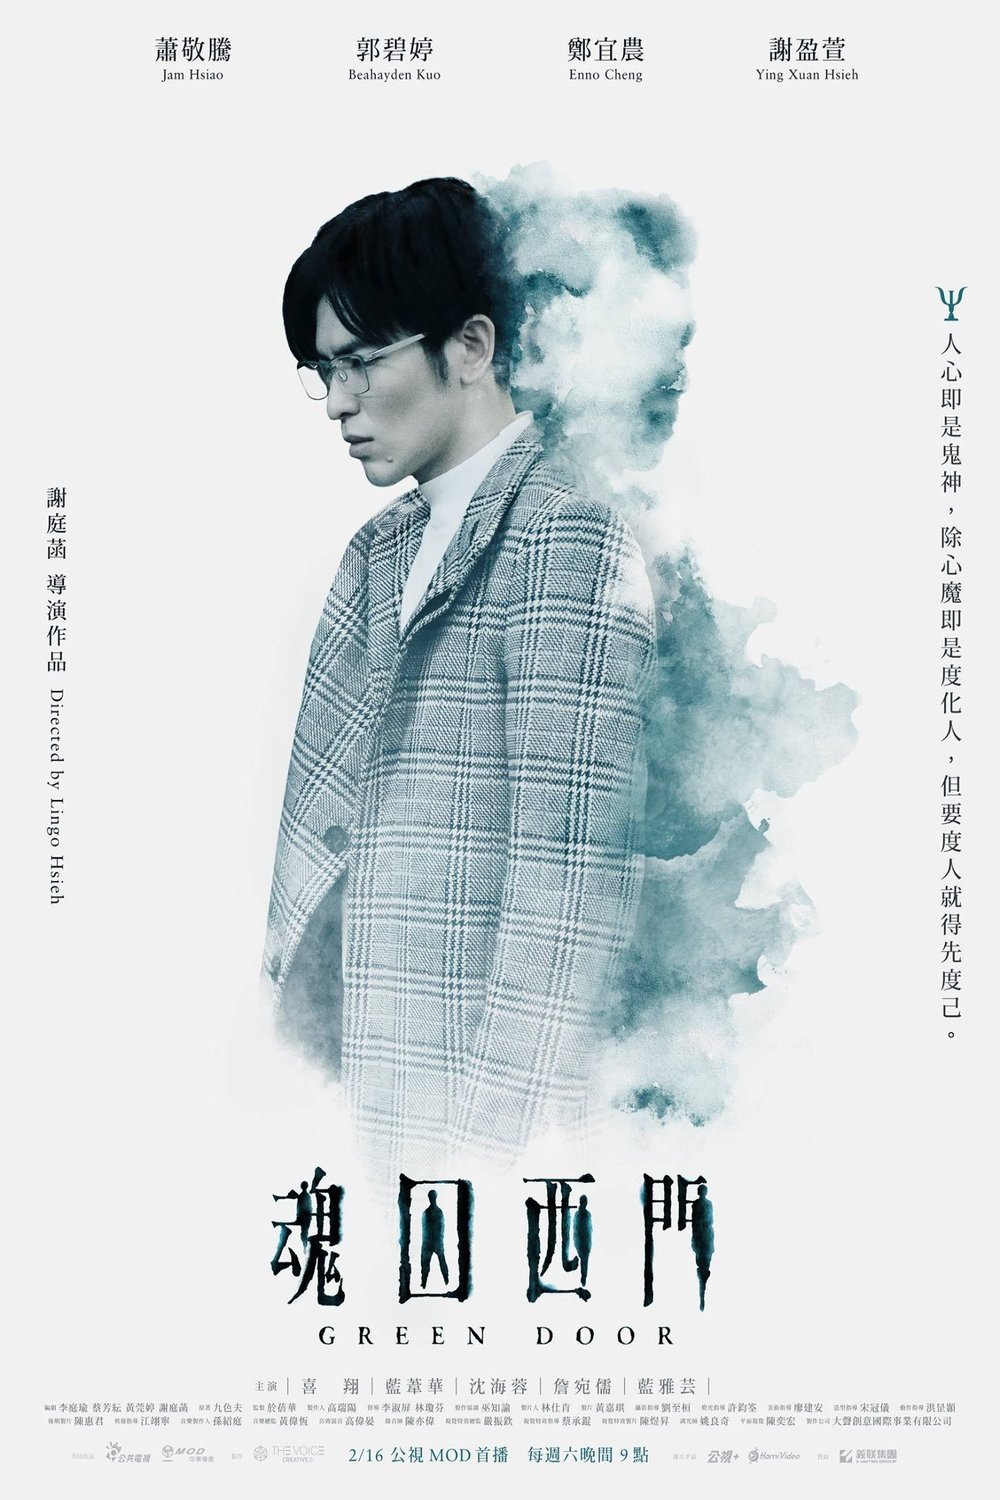 Mandarin poster of the movie Green Door